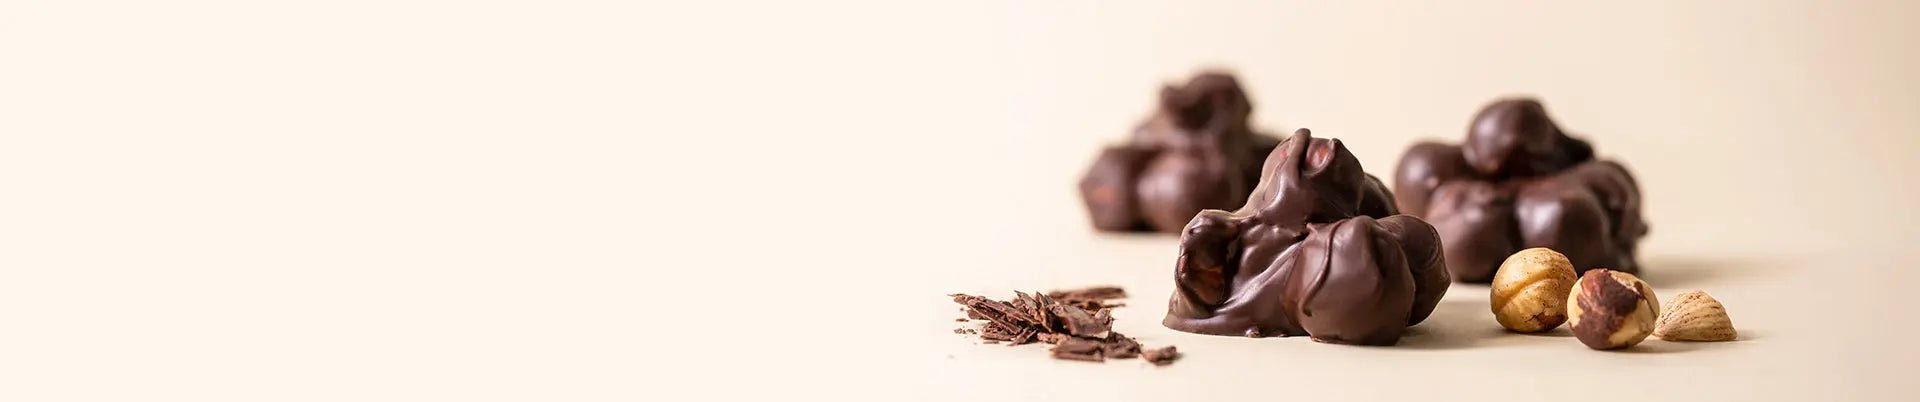 Rocas de chocolate - Bombonería Pons